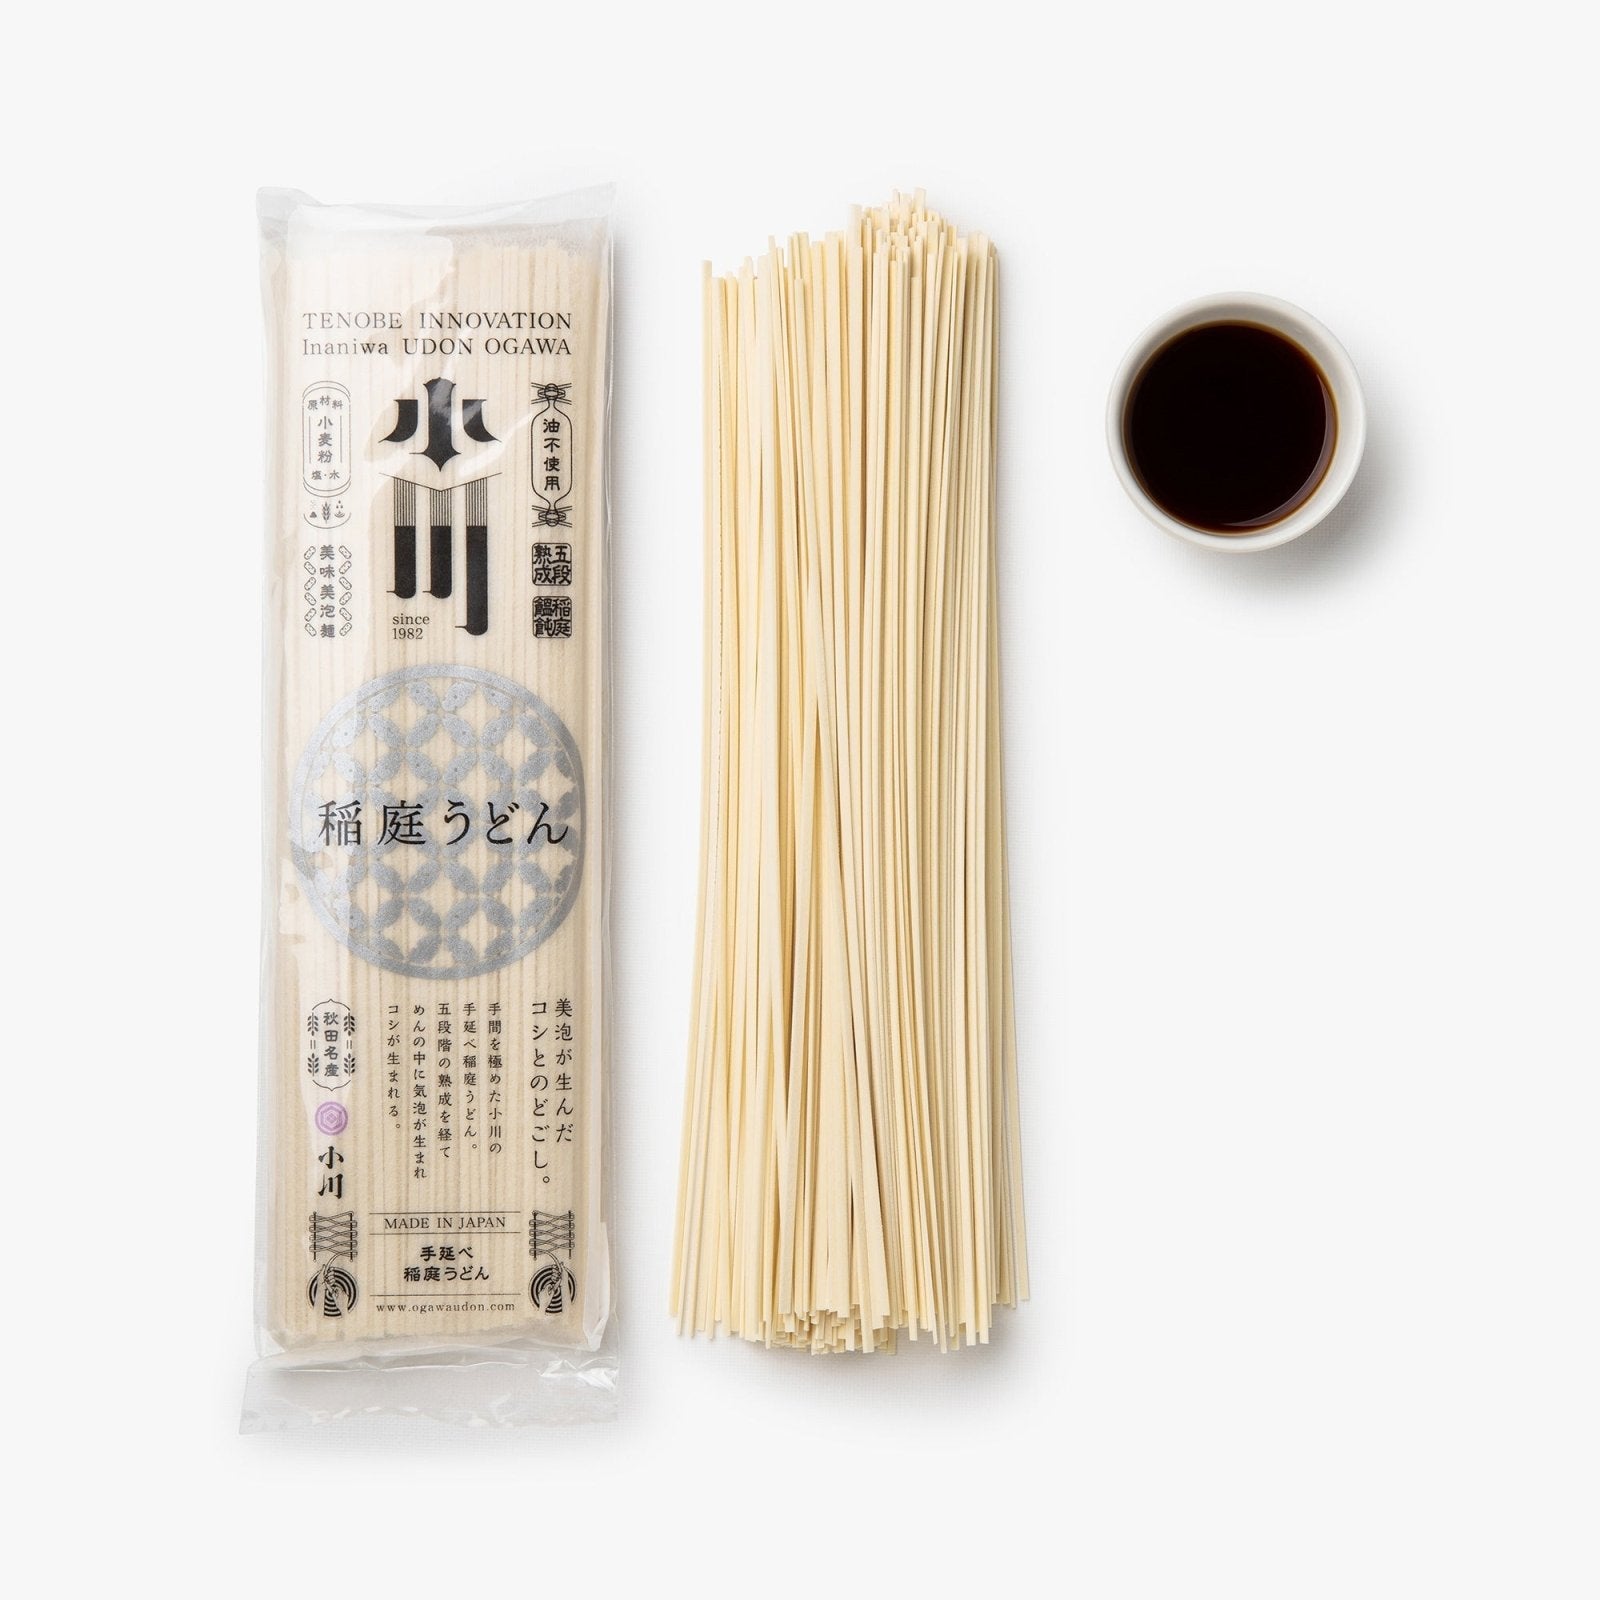 Udon à la sauce mentsuyu - 240g - Inaniwa Udon Ogawa - iRASSHAi